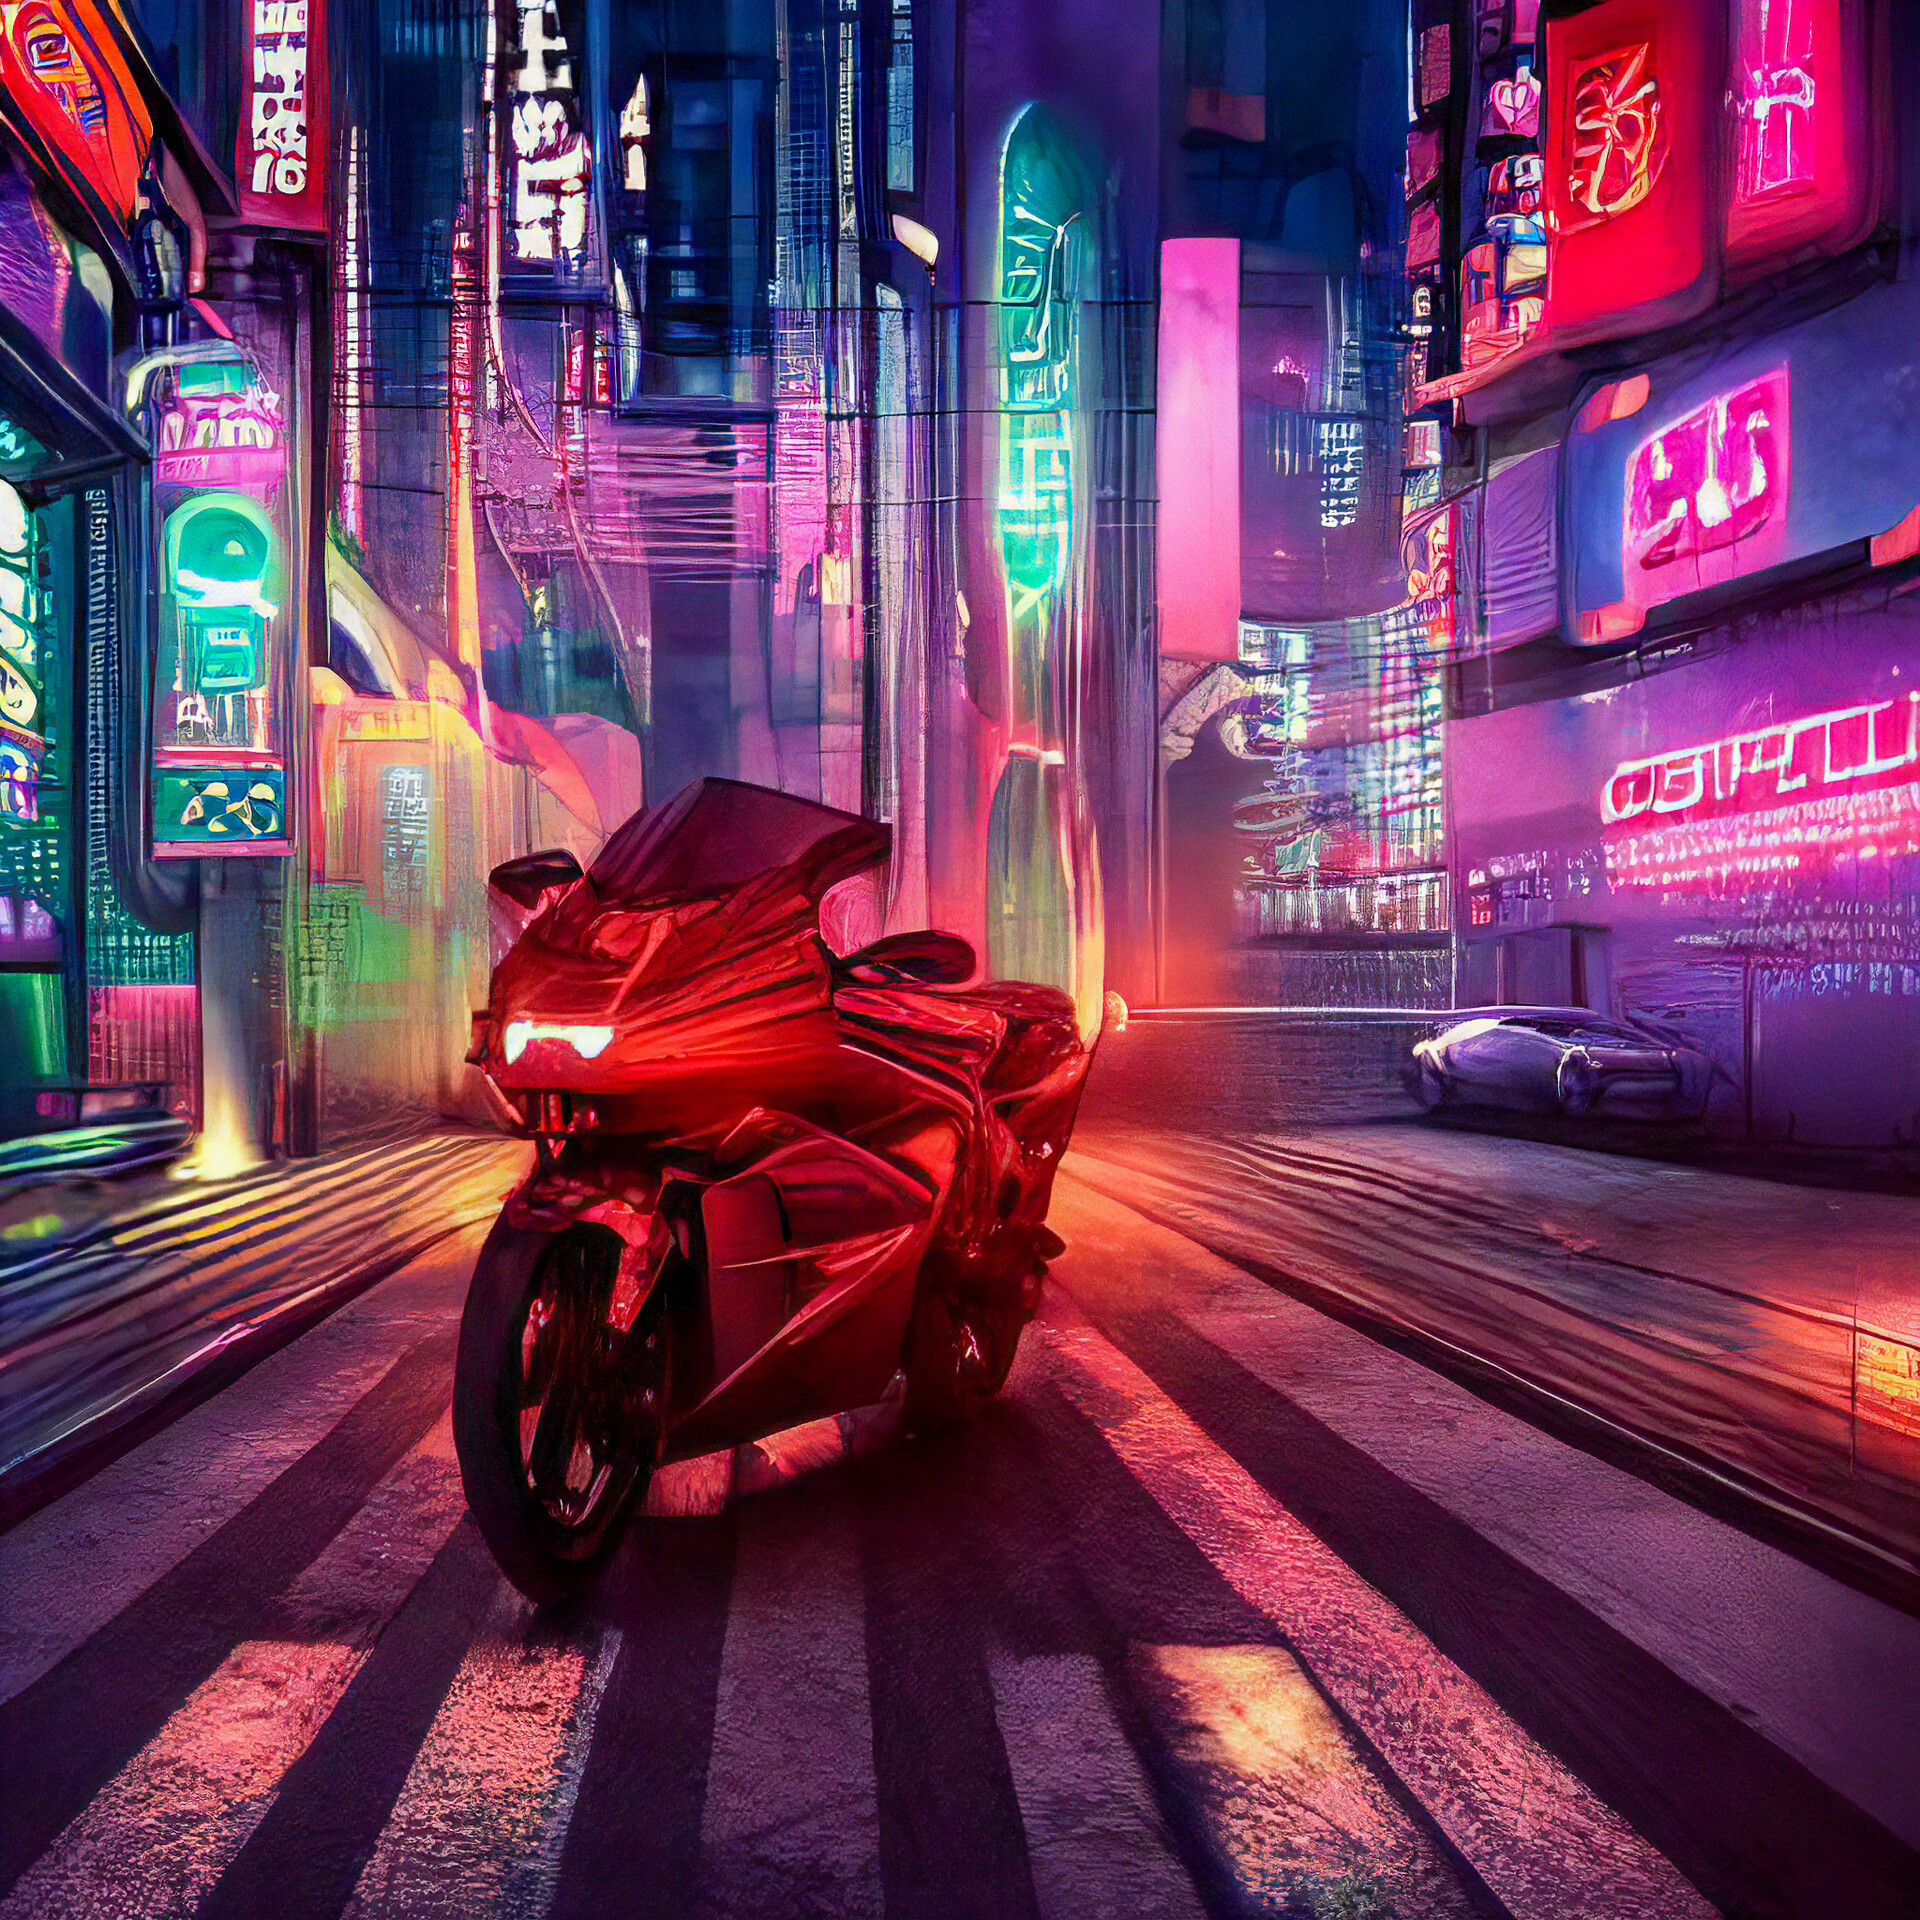 ArtStation - Neon Cyberpunk Art motorcycle girl in city road